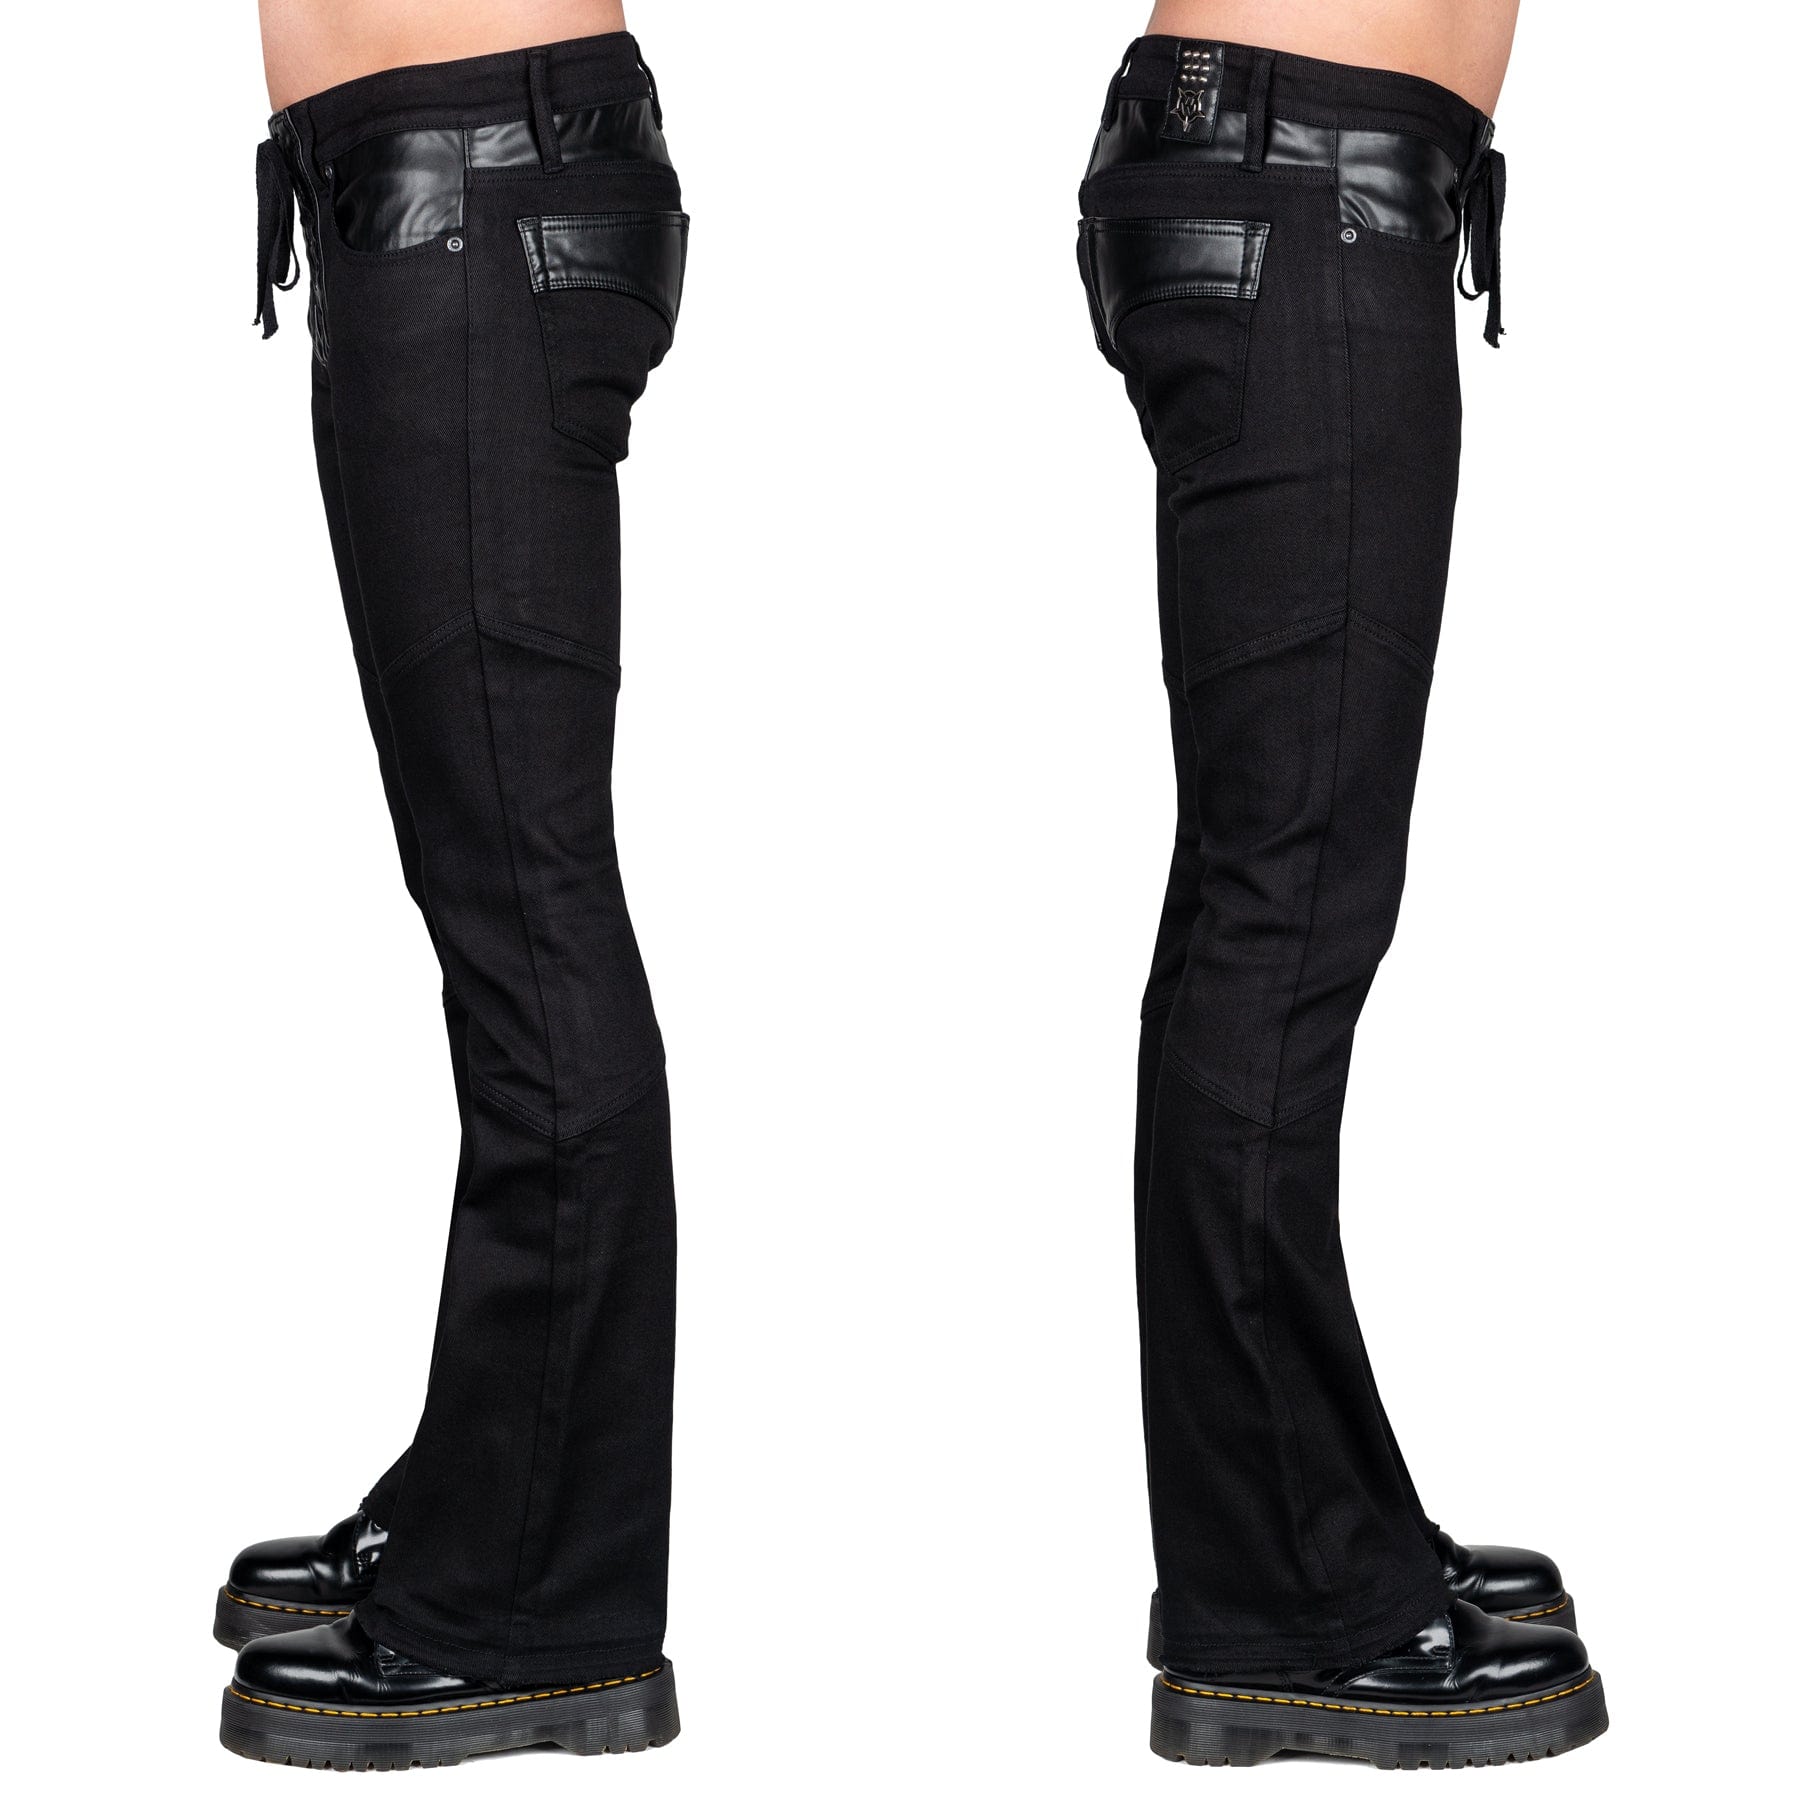 All Access Collection Pants Troubadour Jeans - Black